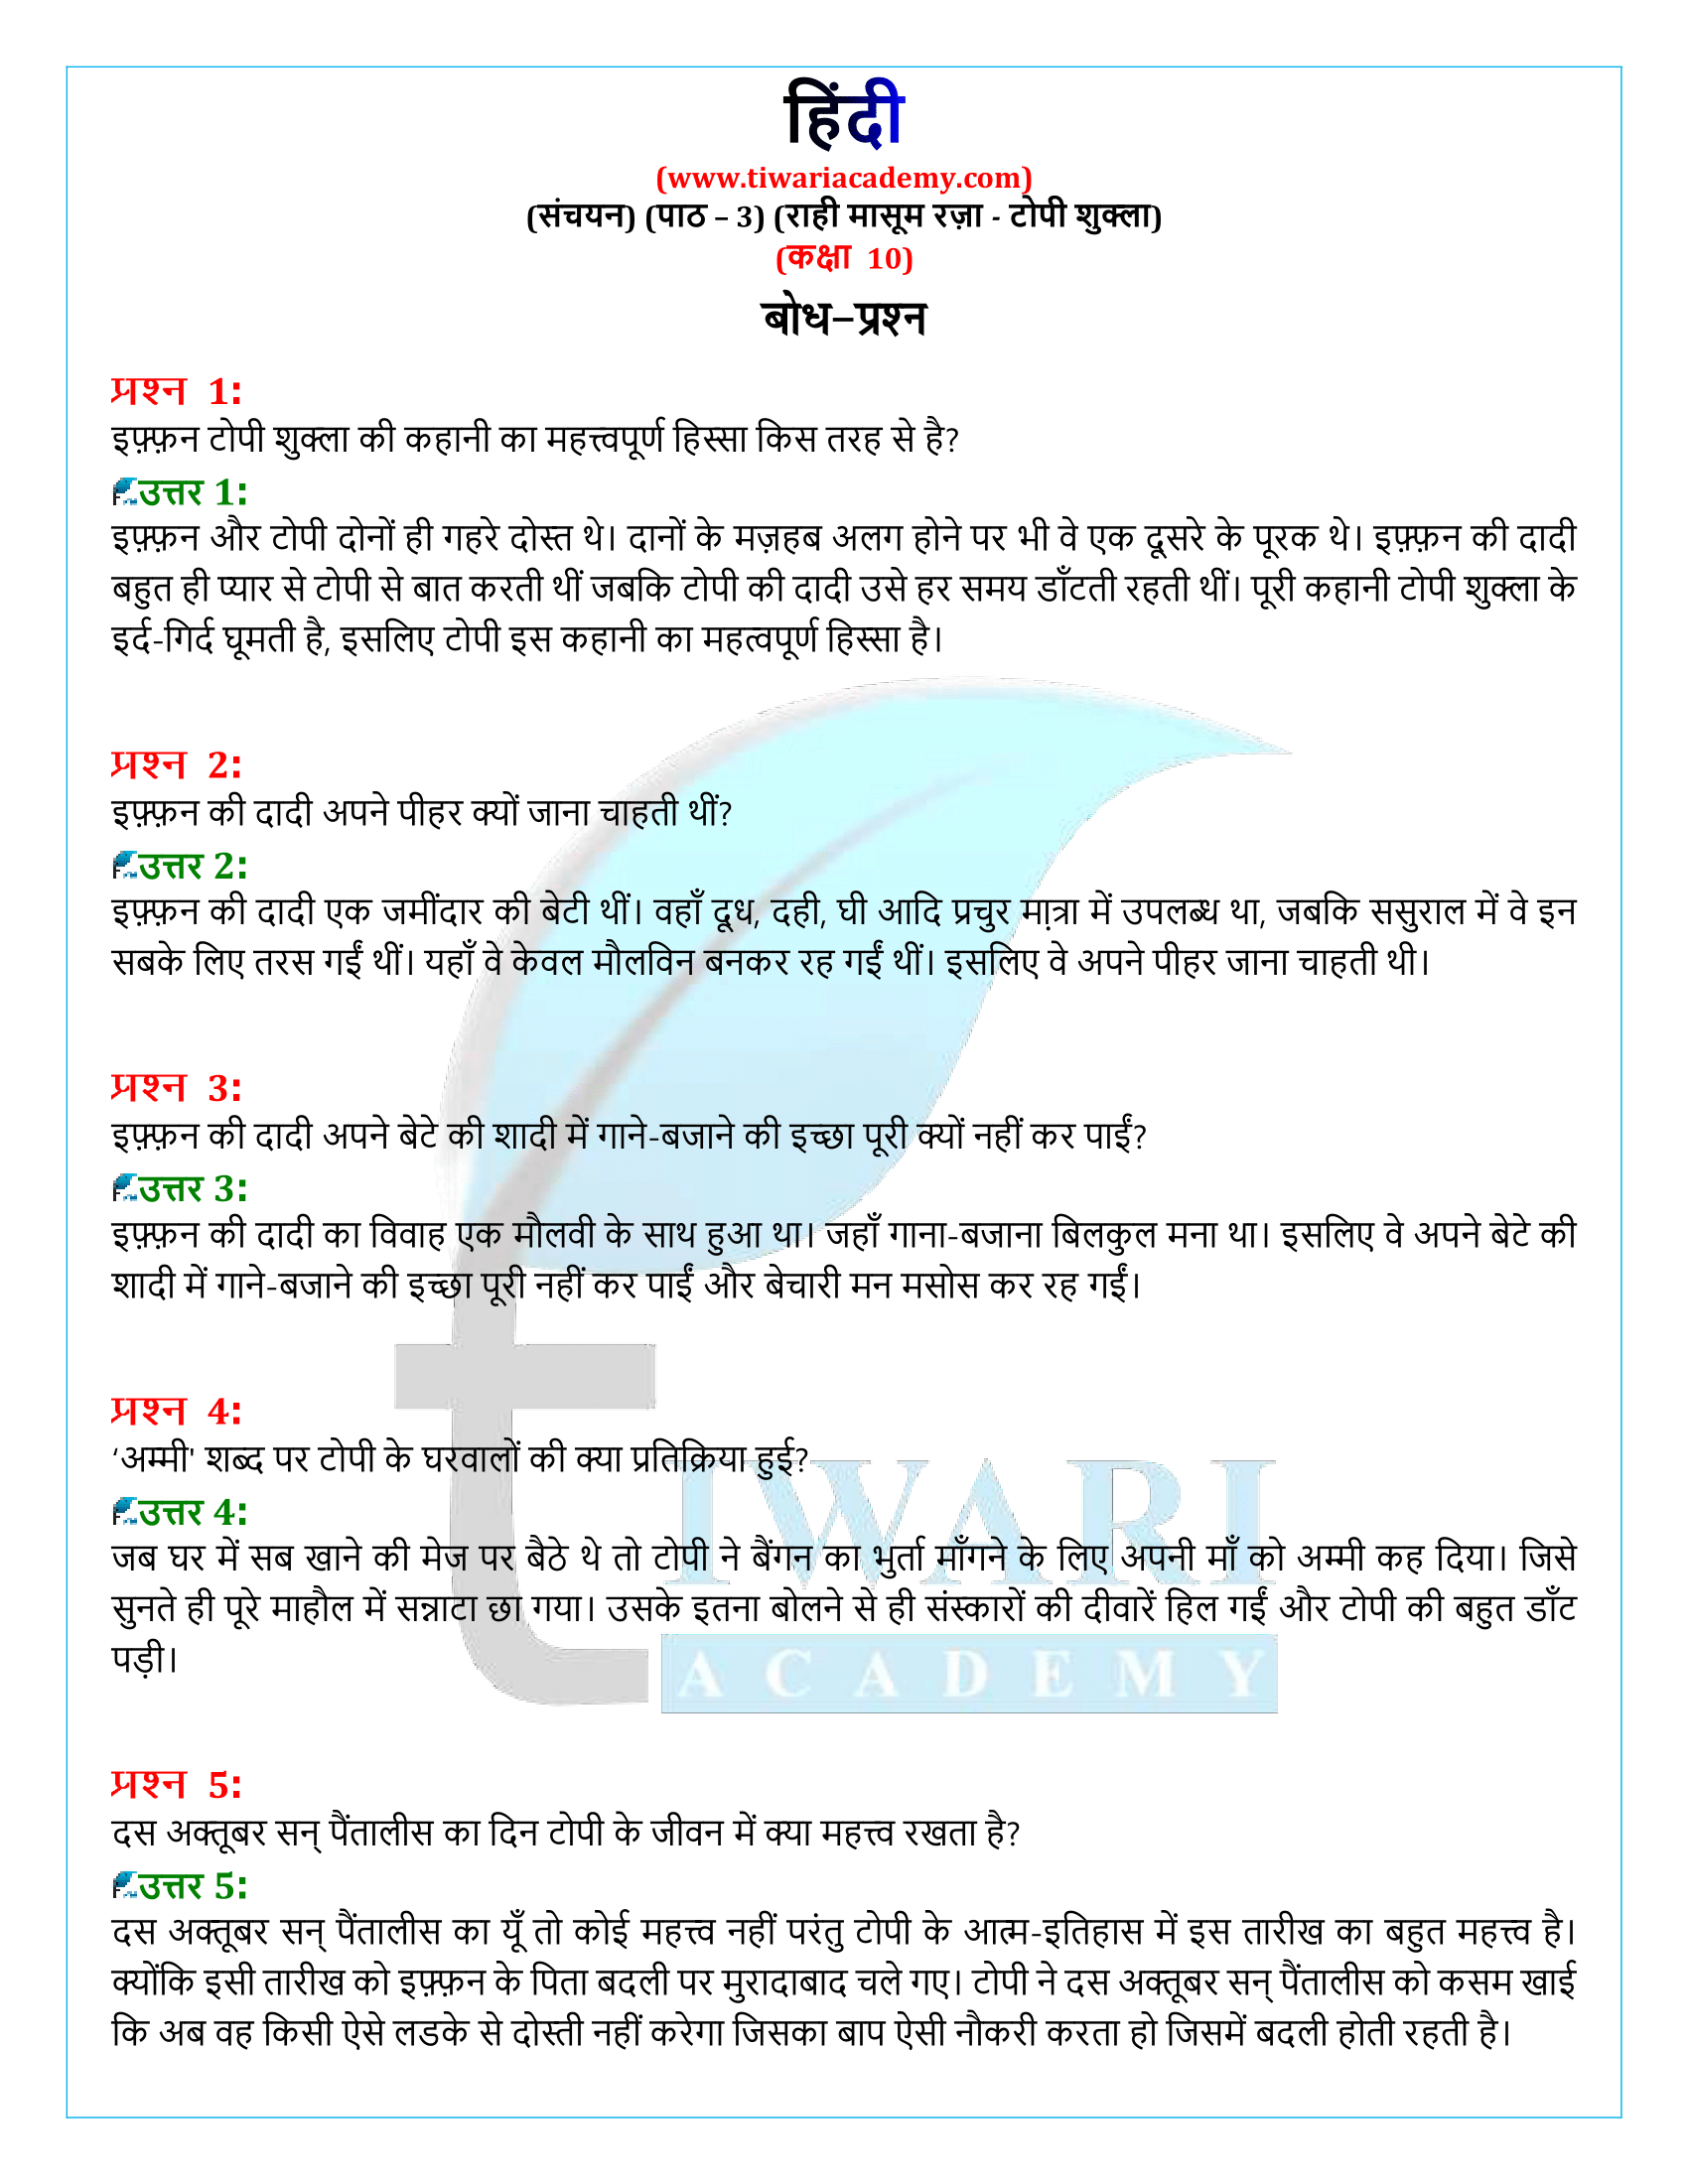 कक्षा 10 हिंदी संचयन अध्याय 3 के प्रश्न उत्तर